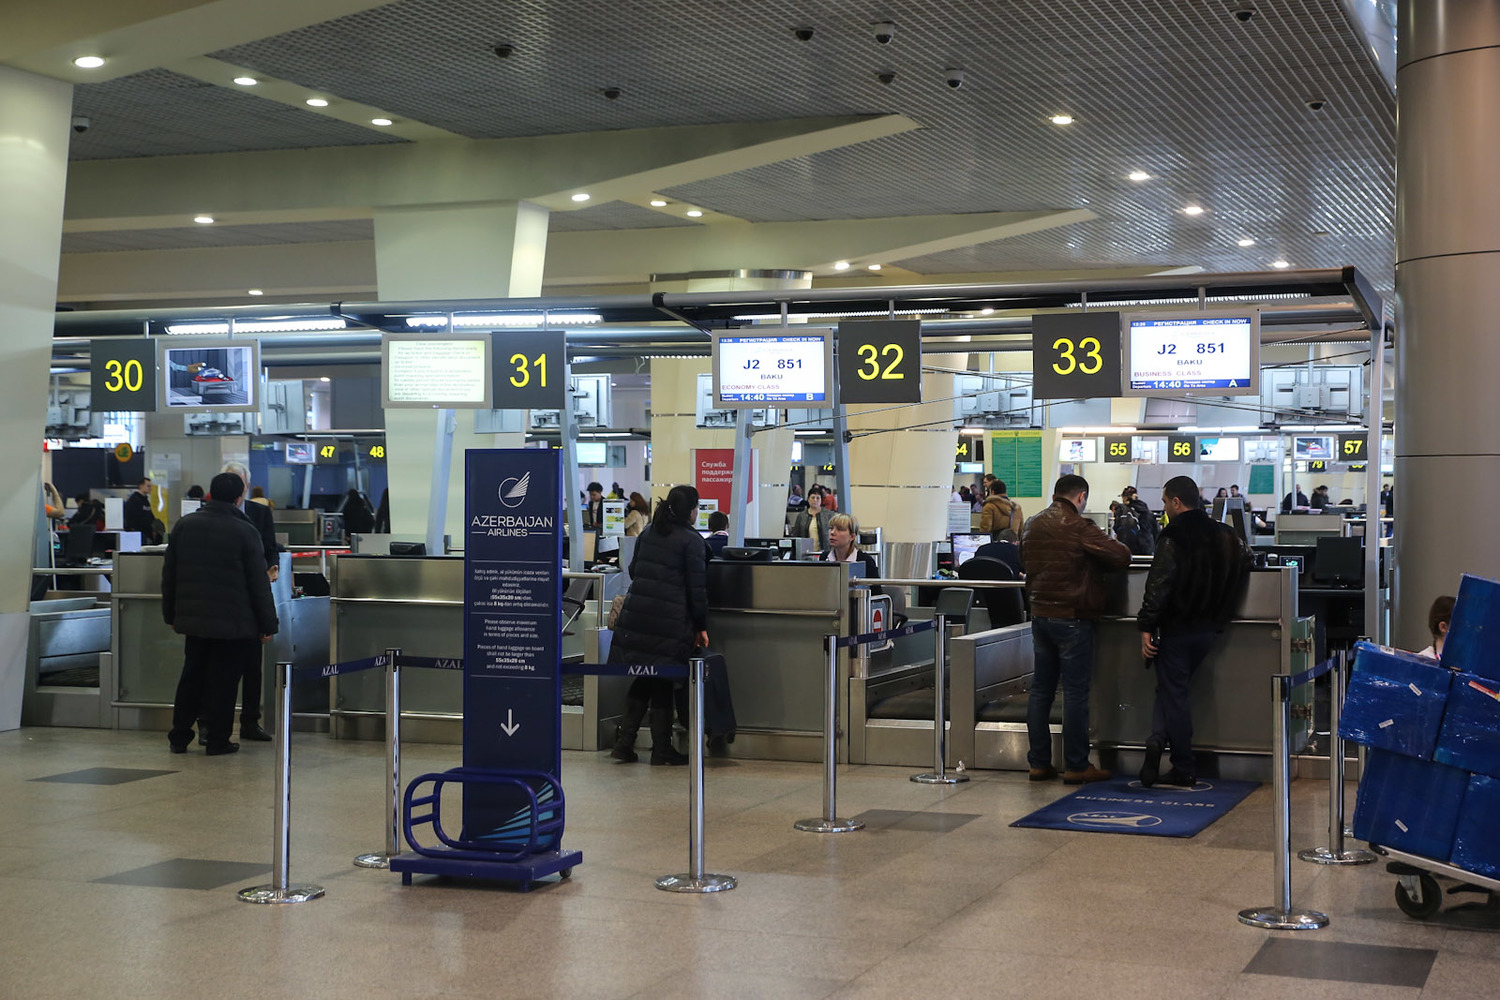 Как зарегистрироваться на рейс компании пегасус – онлайн и в аэропорту